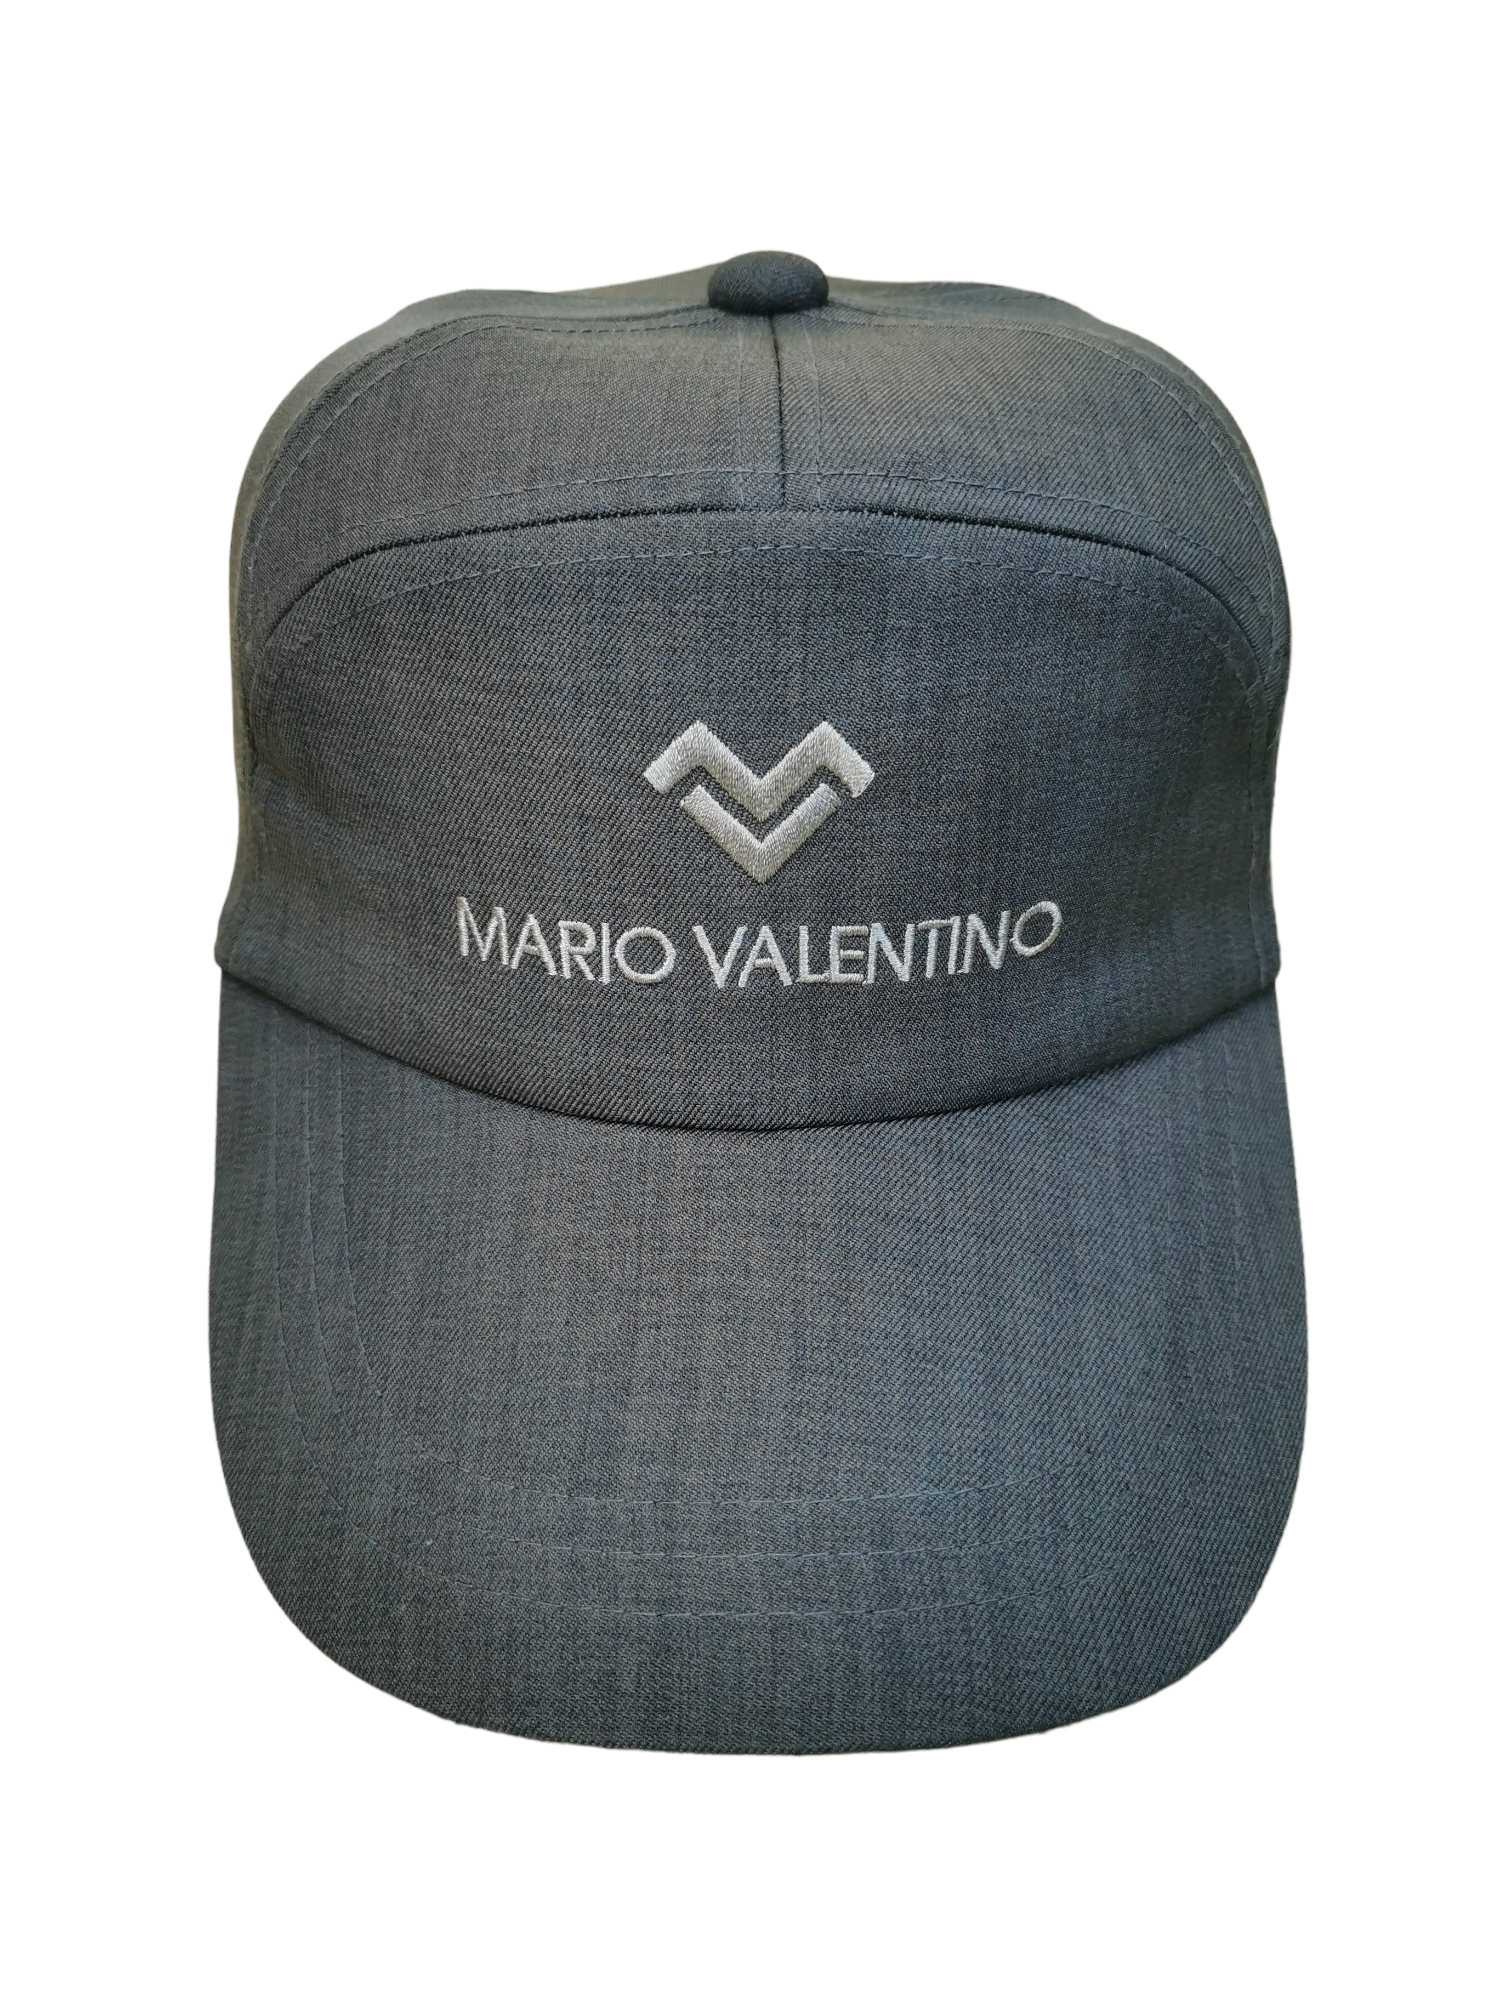 MARIO VALENTINO DESIGNER HAT CAP - 1